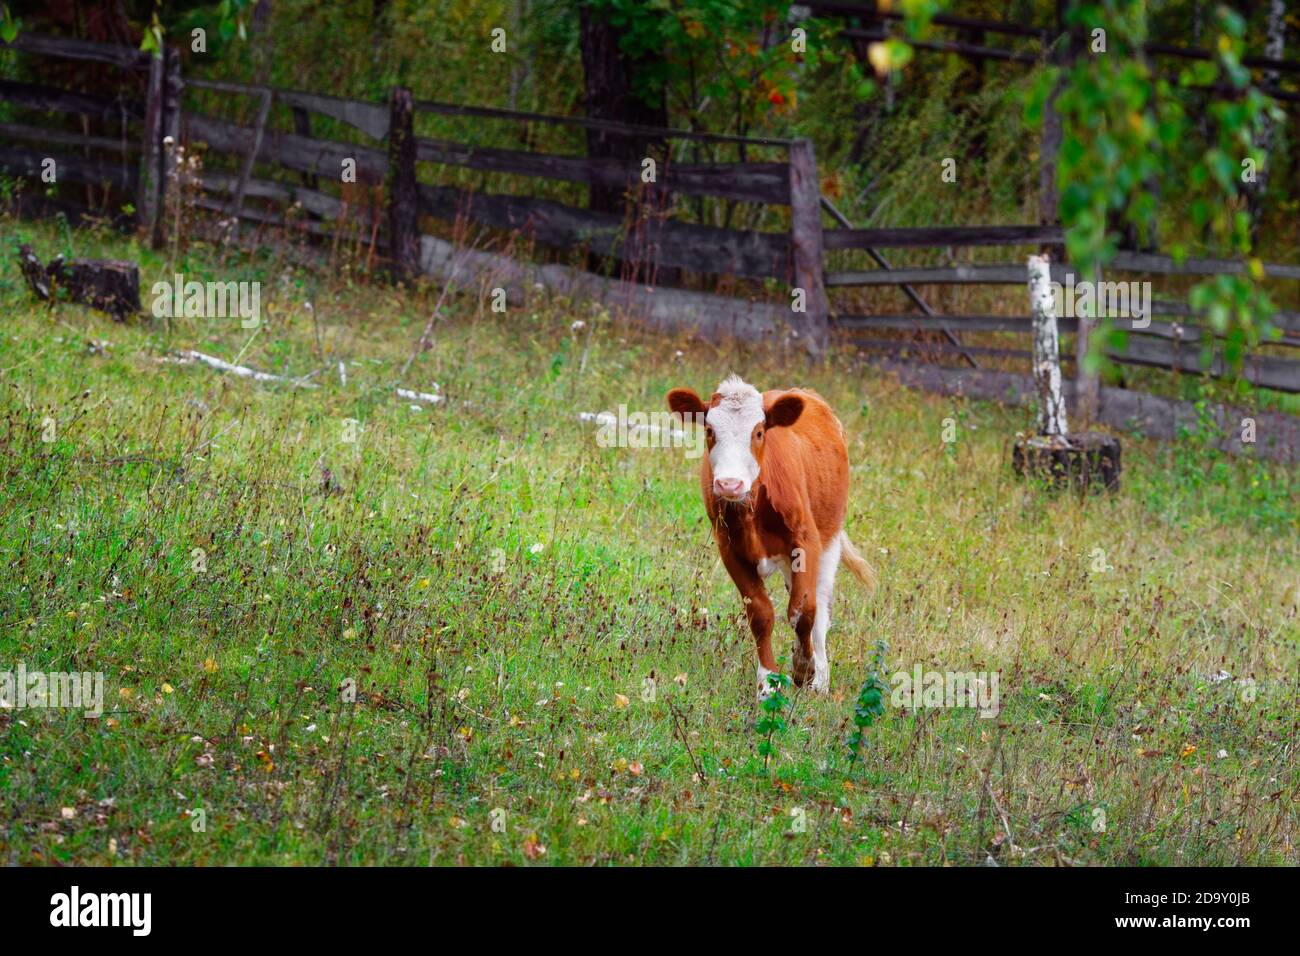 Un jeune veau rouge se tient sur un pré vert. Élevage de bovins sur la ferme Banque D'Images